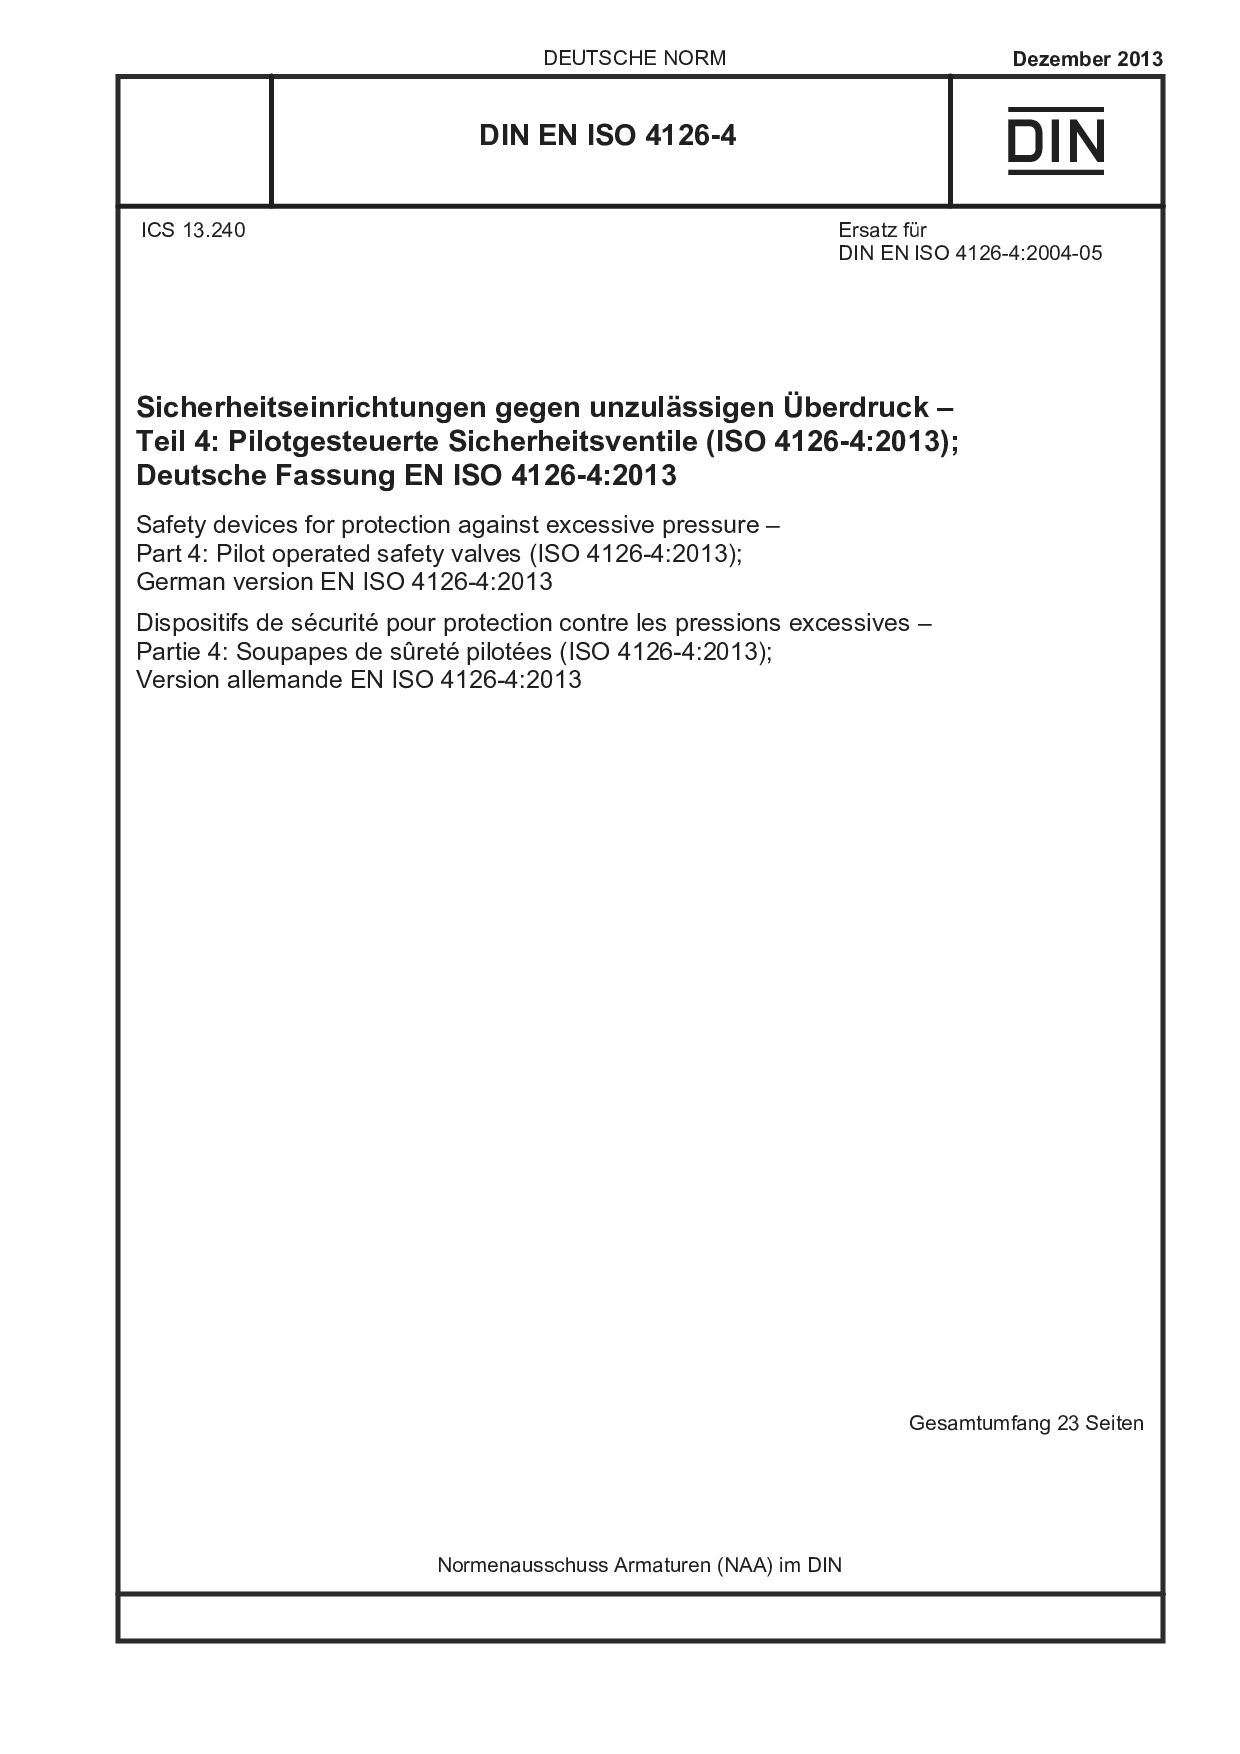 DIN EN ISO 4126-4:2013封面图